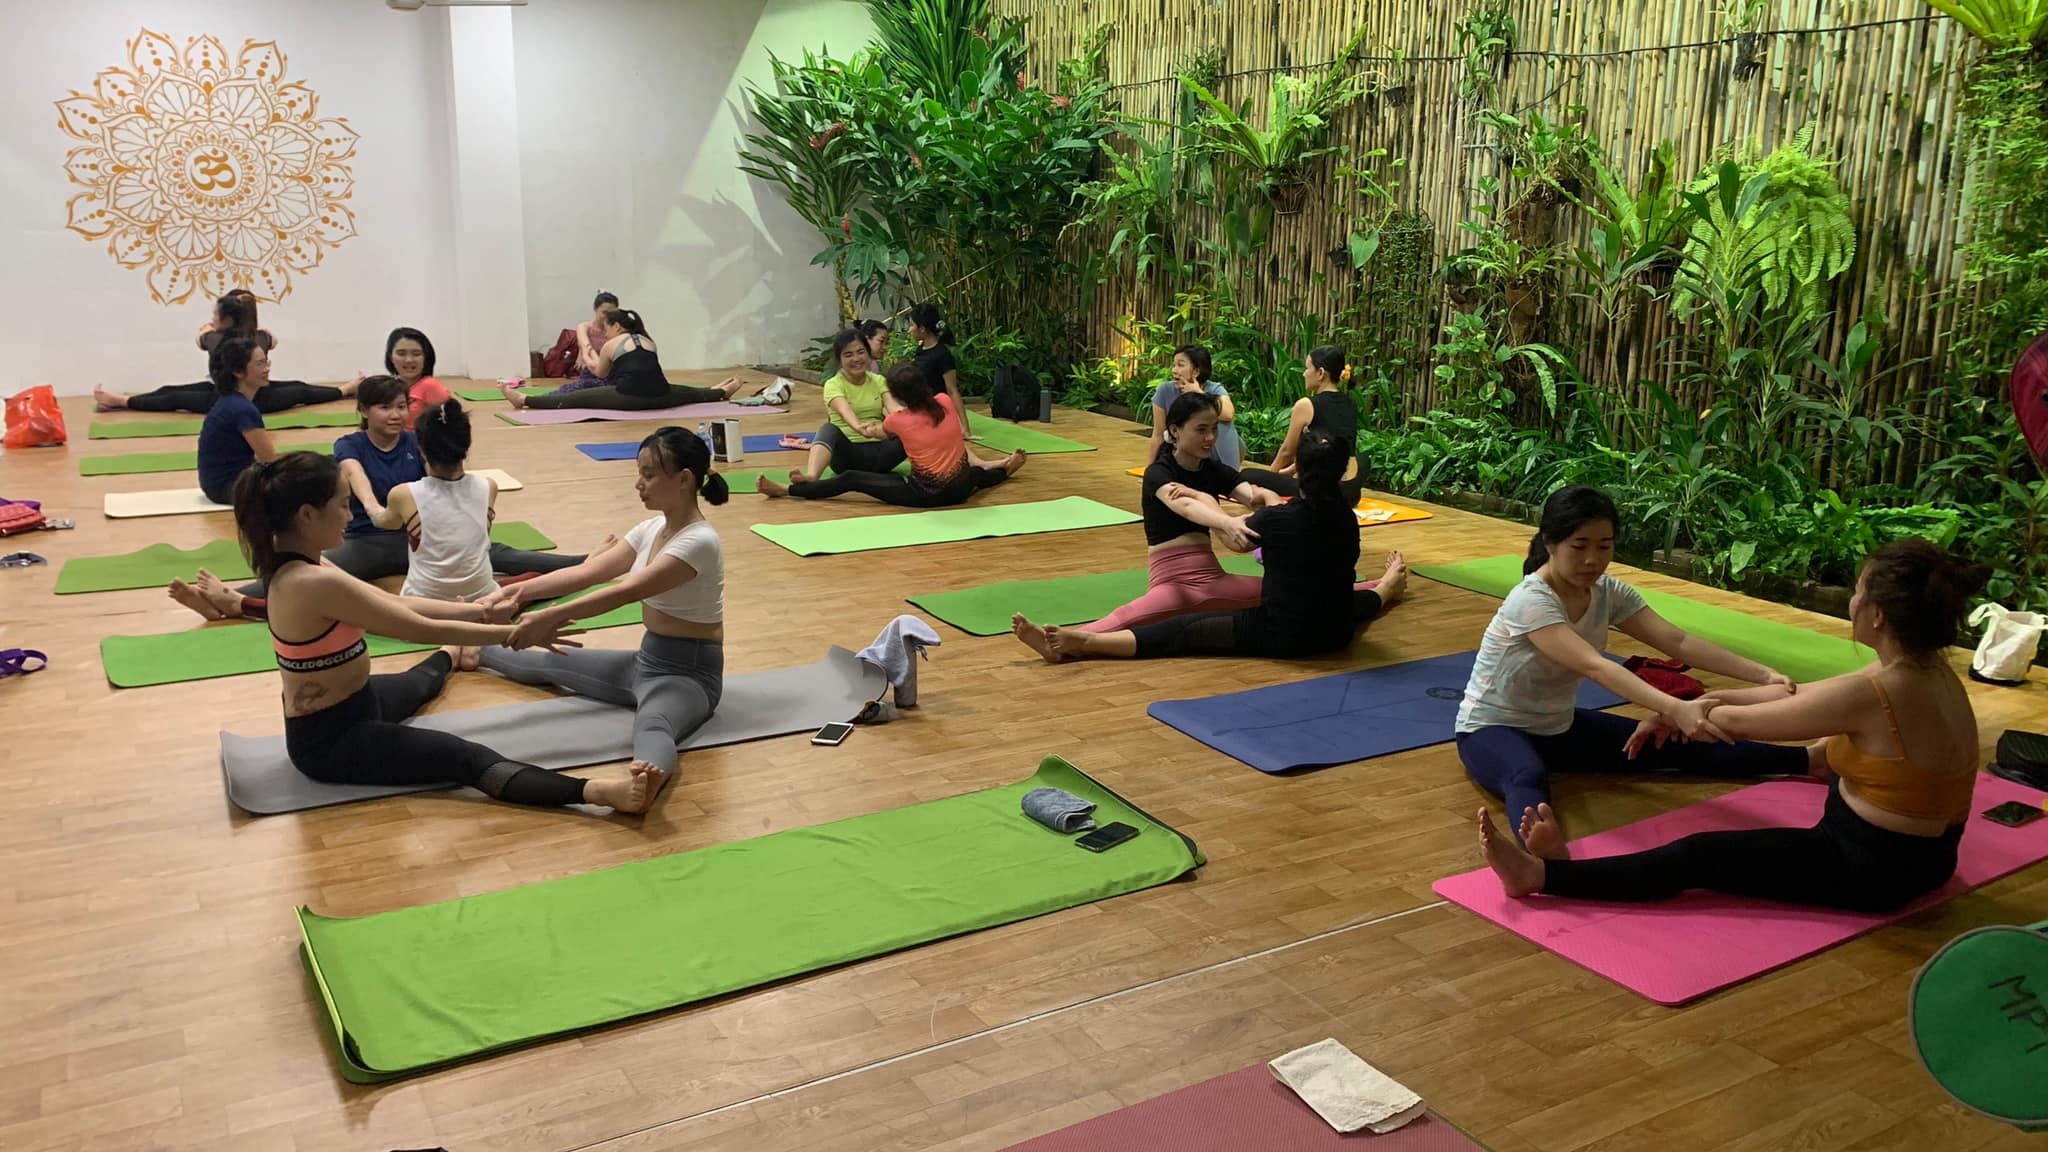 Phòng tập Yoga ở Biên Hòa: Phòng tập Yoga đẳng cấp của chúng tôi đã chính thức mở cửa tại Biên Hòa! Với không gian rộng rãi, ánh sáng tự nhiên và thiết bị hiện đại, phòng tập này sẽ giúp bạn đắm mình trong không gian yoga nâng cao sức khỏe. Hãy đến và cùng chúng tôi khám phá những bài tập tuyệt vời của yoga!